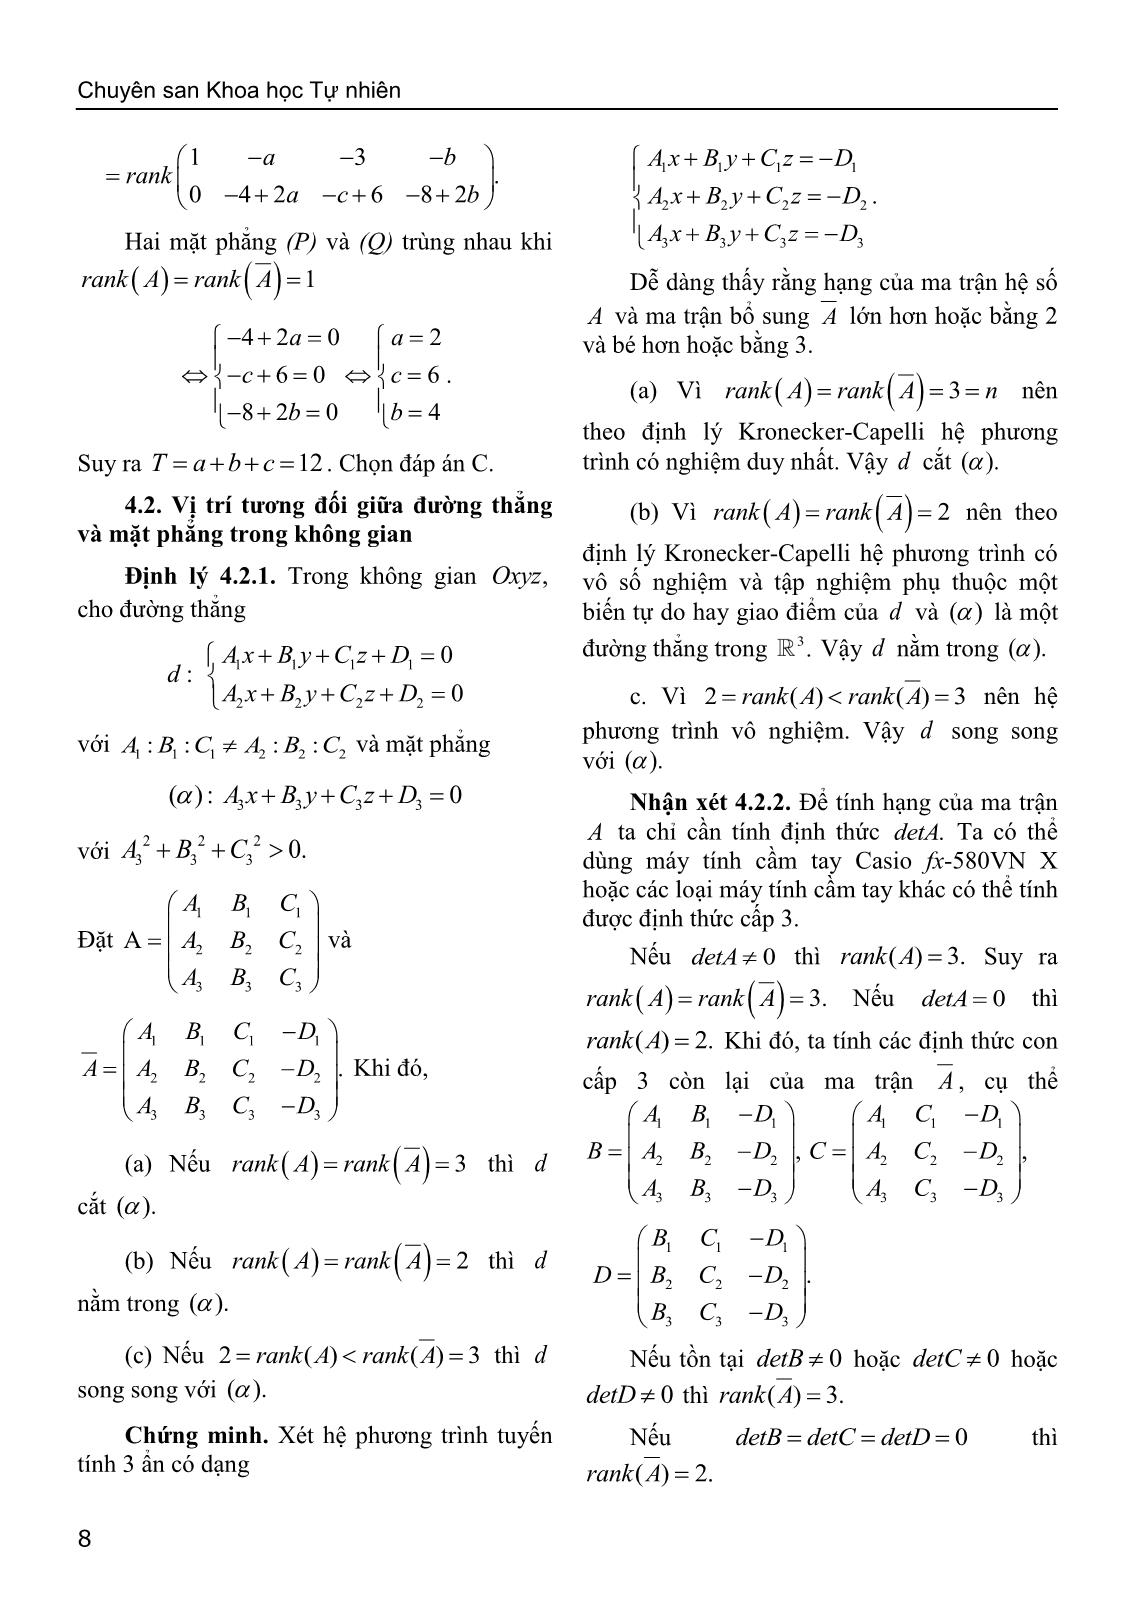 Sử dụng định lý Kronecker-Capelli giải bài toán về vị trí tương đối của hình học giải tích trong không gian trang 6